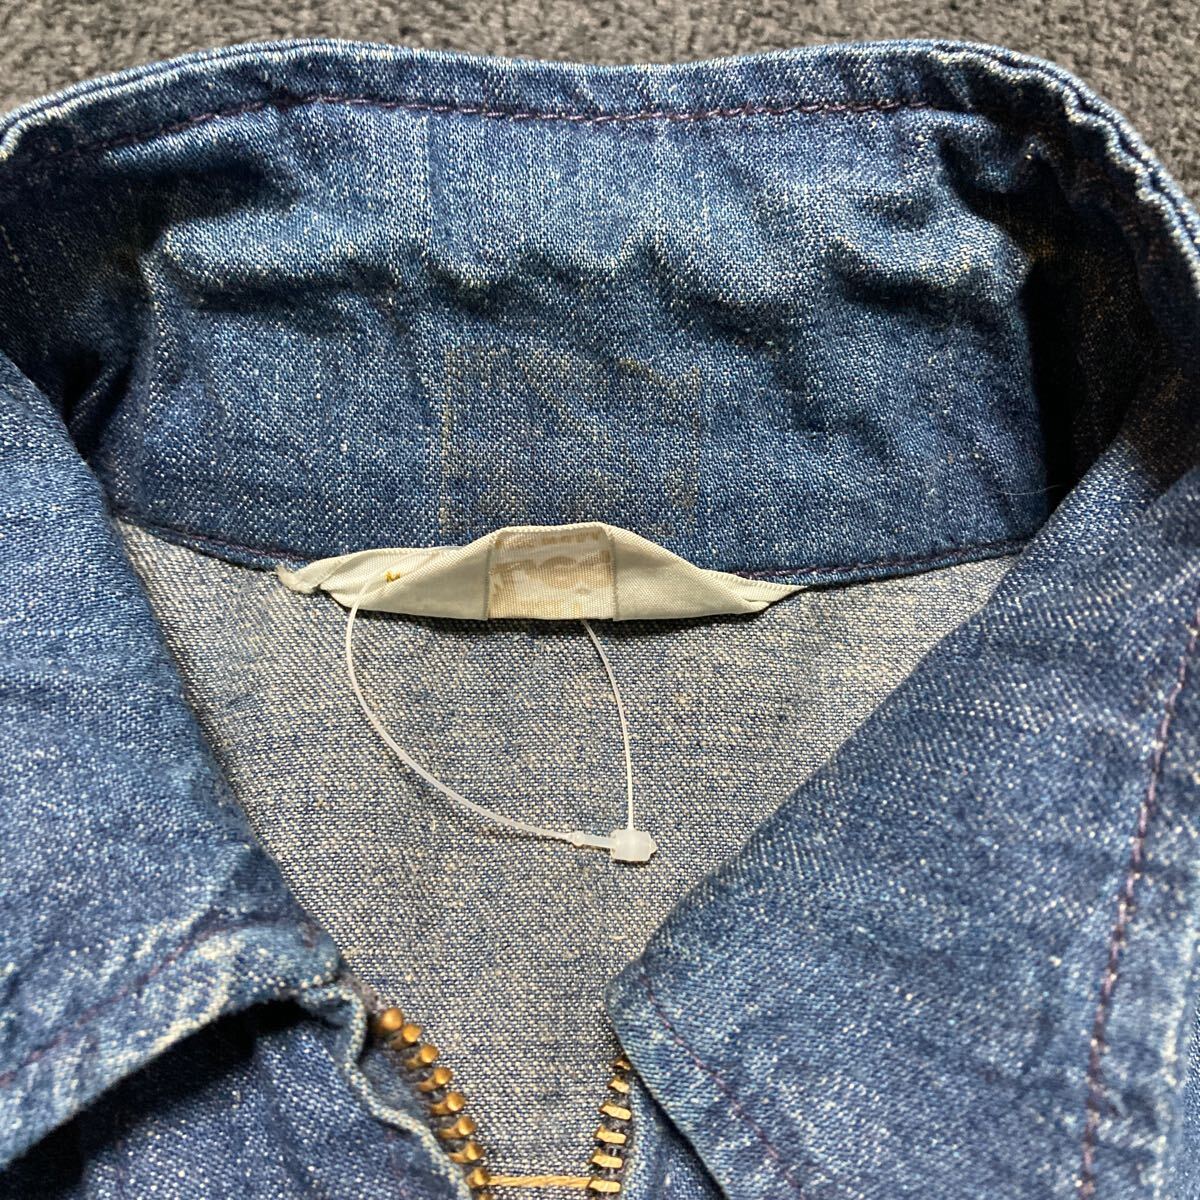 [ rare ]Ms. Lee Lee 91-B Denim jacket Work jacket size 13/14 USA made old clothes Vintage 